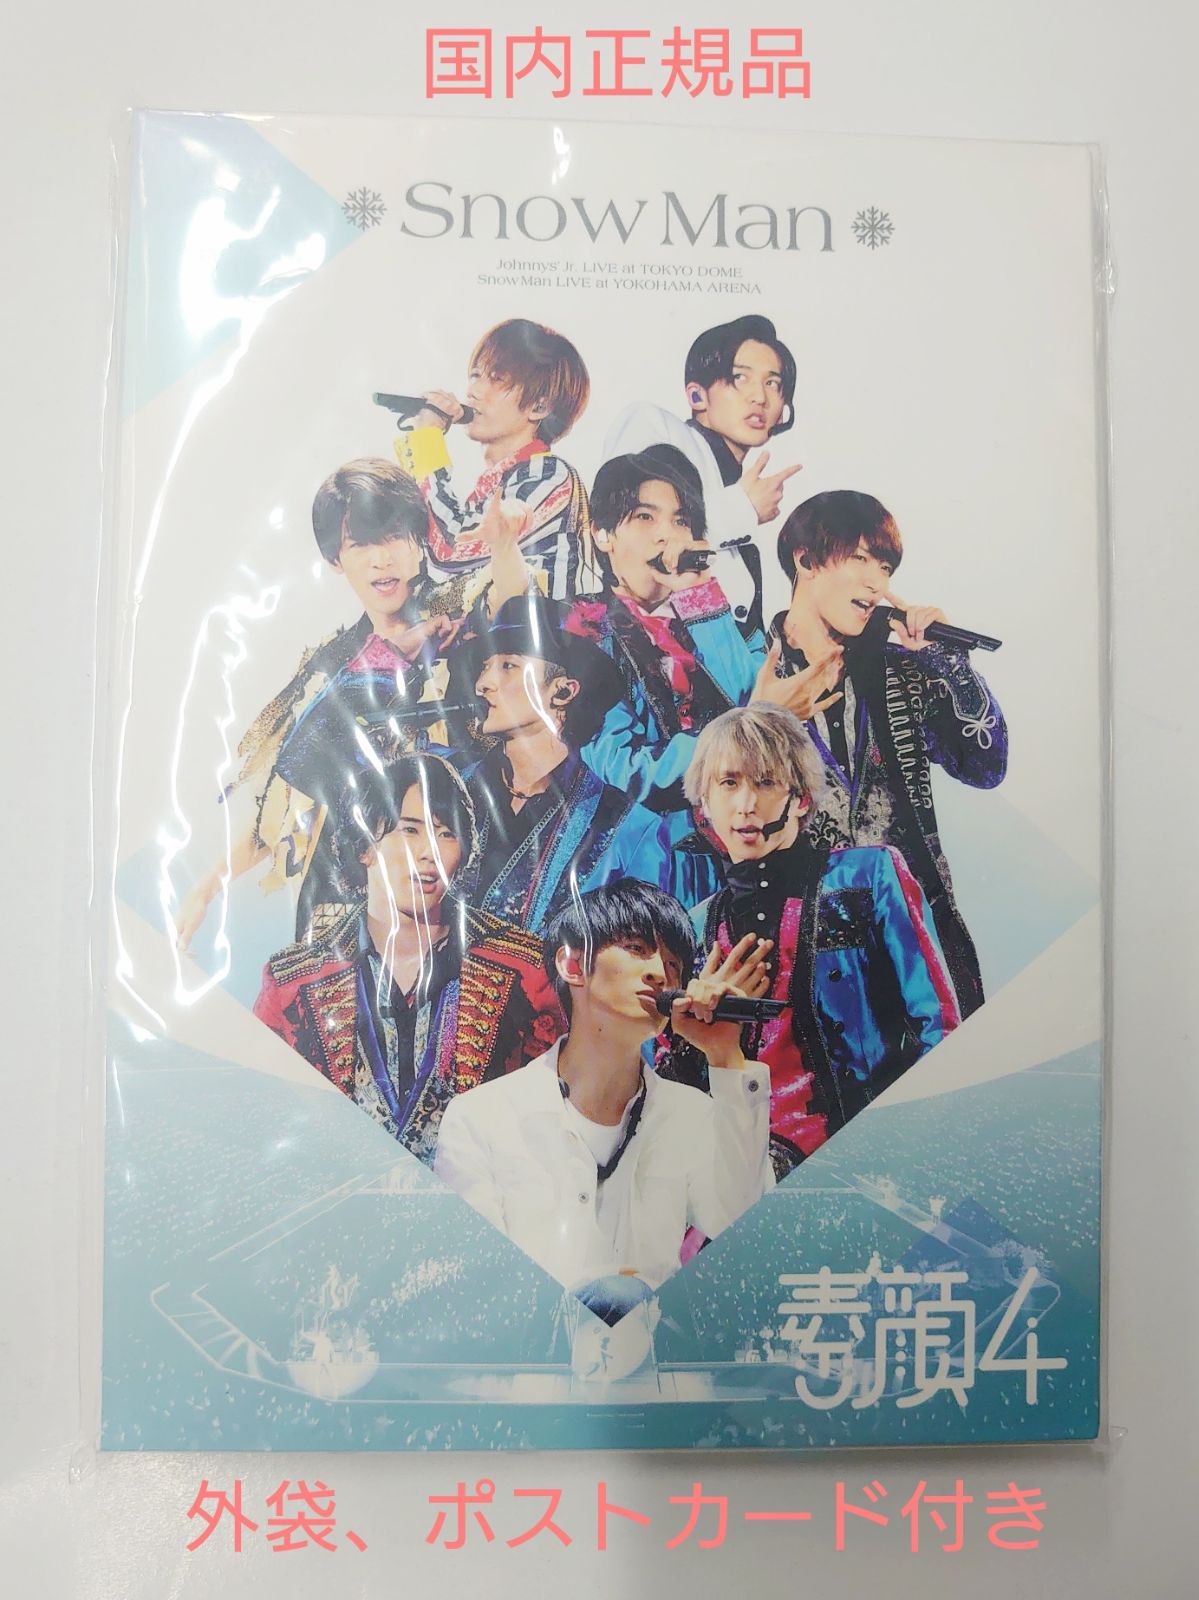 素顔4 SnowMan盤 (外袋、ポストカード付き) - メルカリ